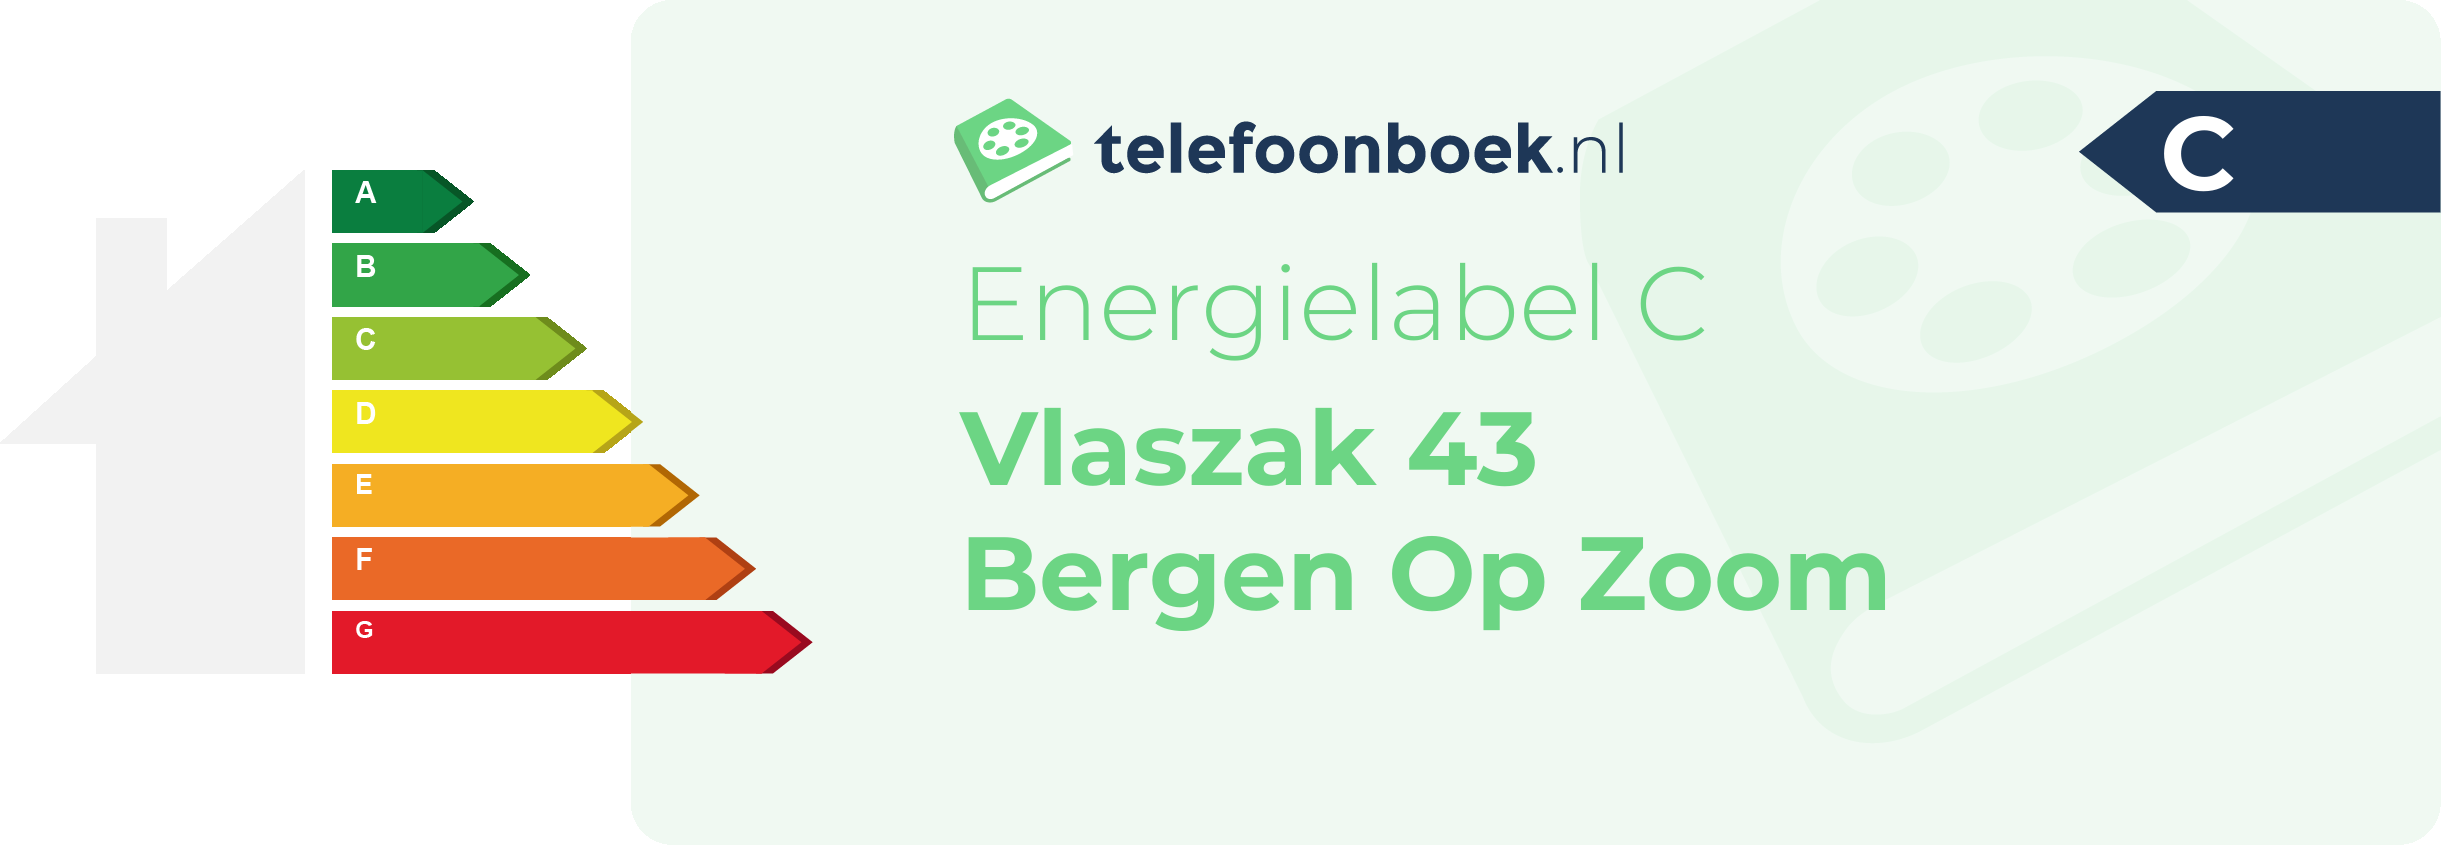 Energielabel Vlaszak 43 Bergen Op Zoom